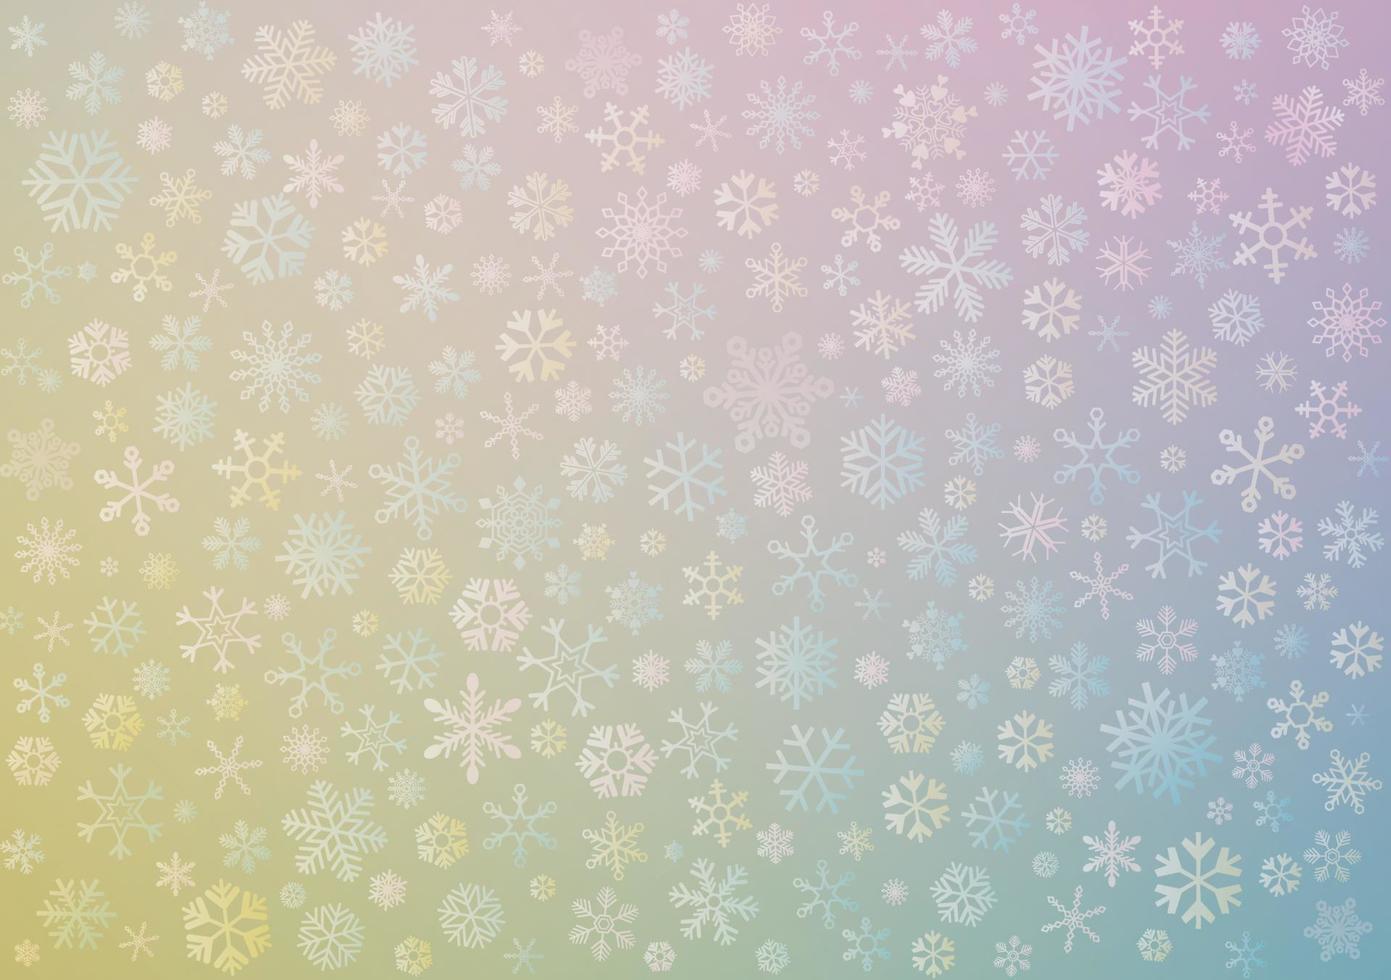 olika snöflingor med pastell färger suddig bakgrund. vektor